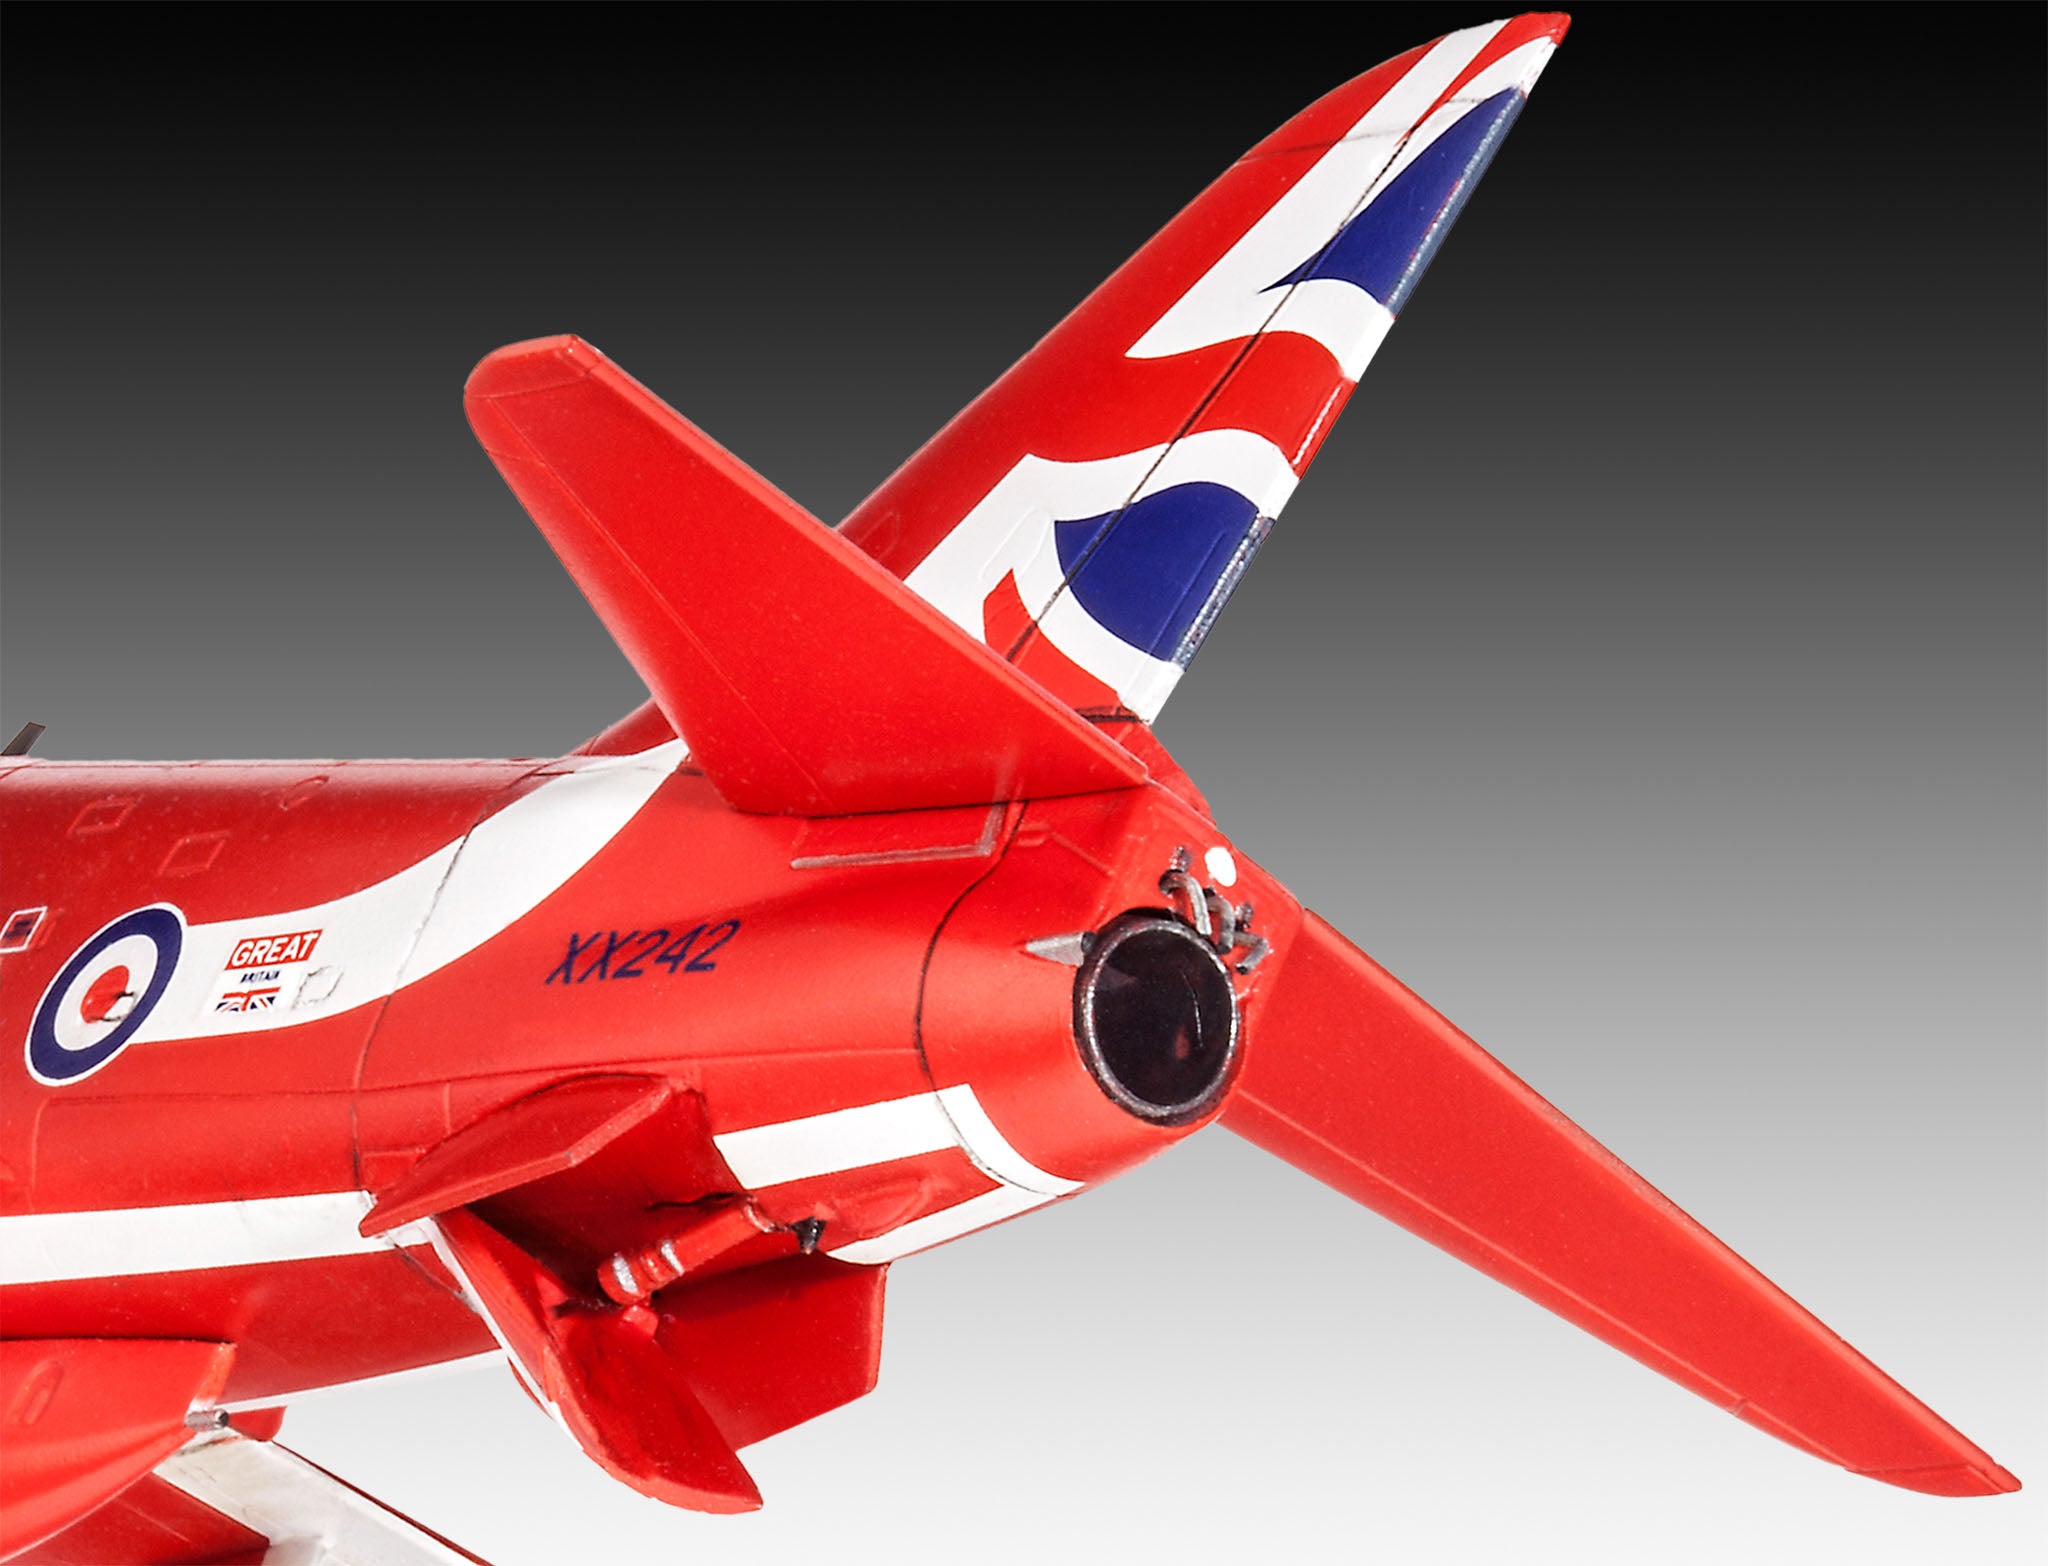 BAE Hawk T.1 "Red Arrows" (1:72) - Loaded Dice